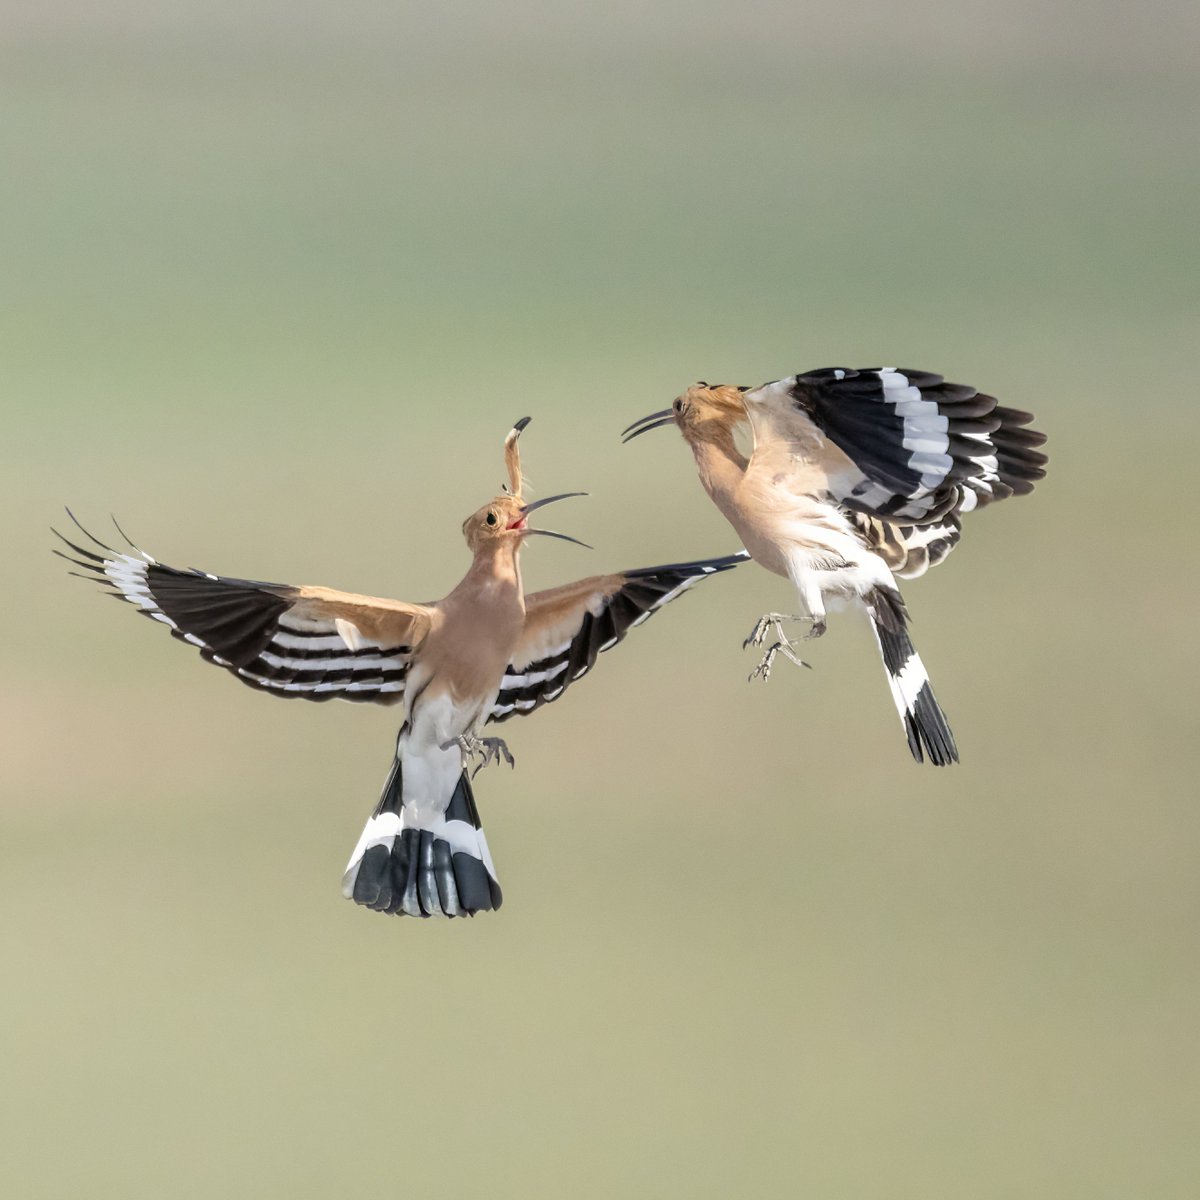 İbibiklerin havada dansı
Çoğu kuş gibi bu aralar onların da kanı kaynıyor😄
Upupa epops
Eurasian hoopoe